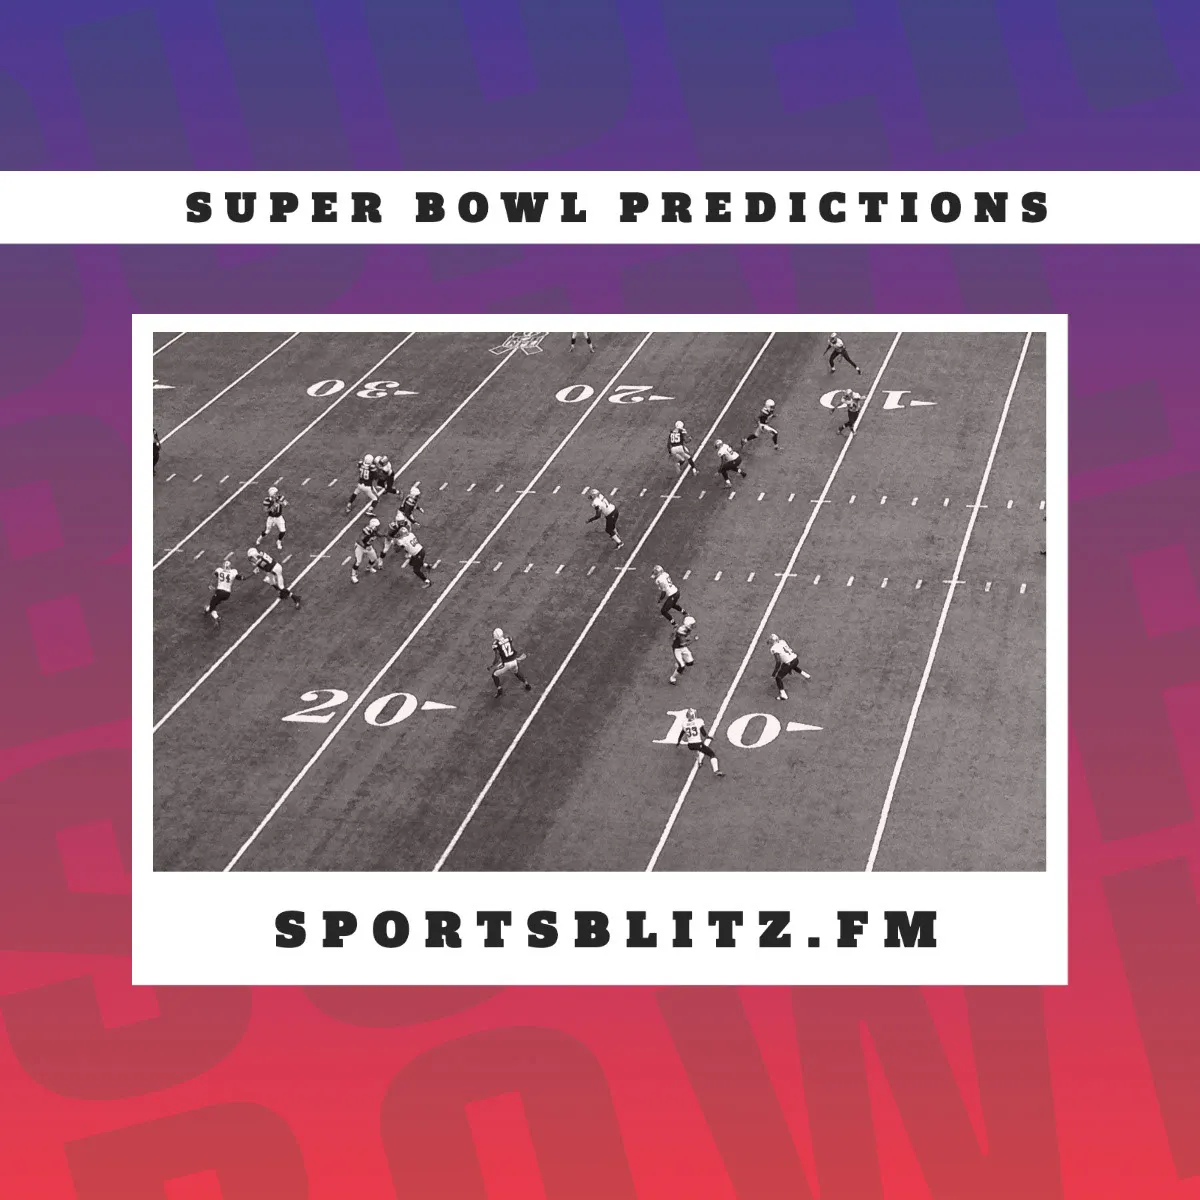 Red, Purple & White Super Bowl Predictions Instagram Square